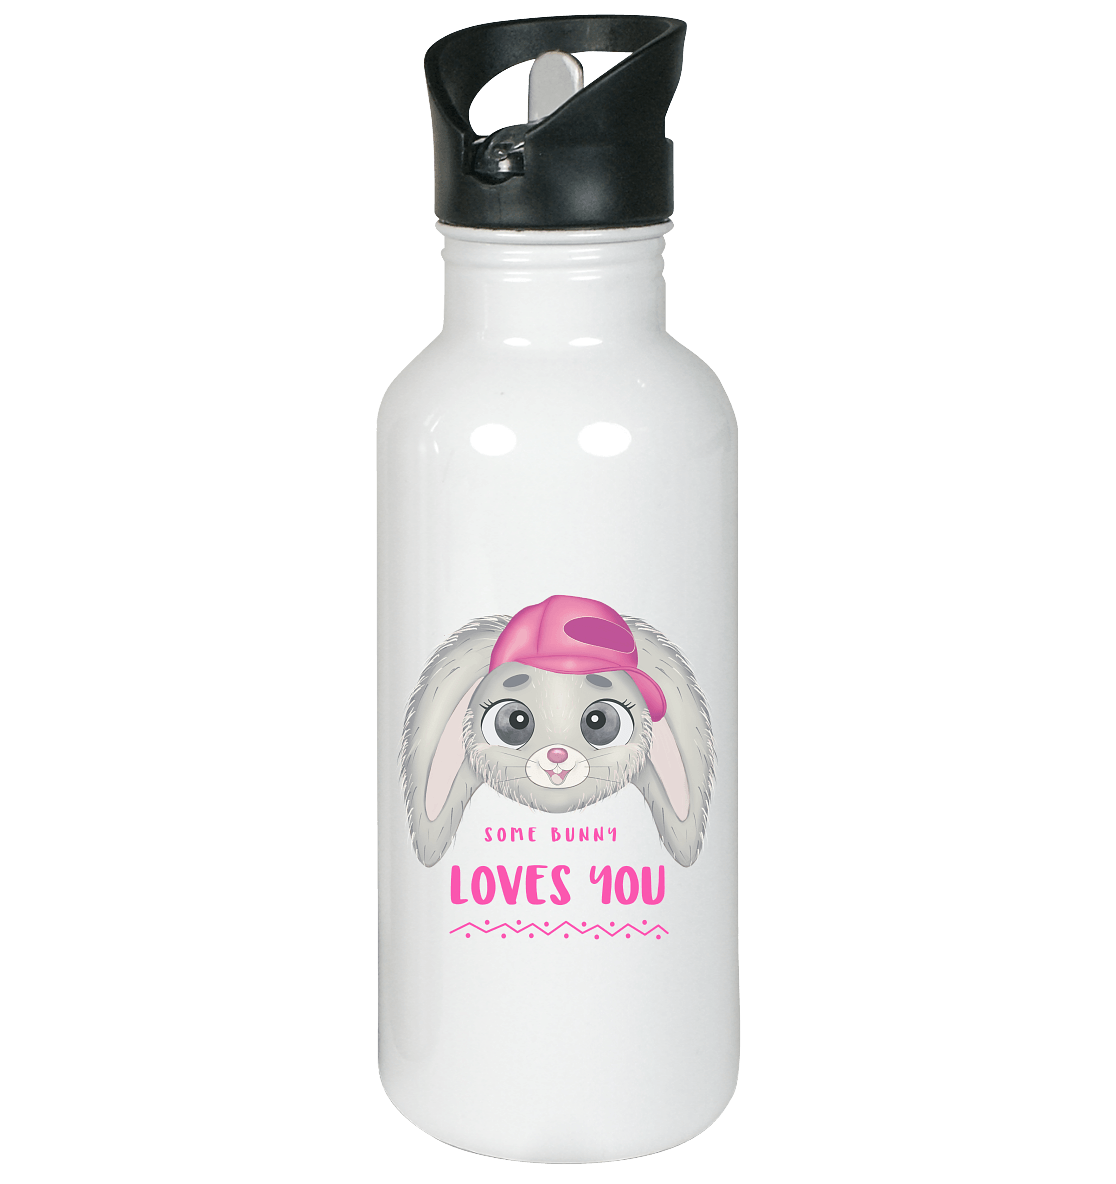 Edelstahl-Trinkflasche mit handgezeichneten Bunny Cartoon und Beschriftung "some bunny loves you."